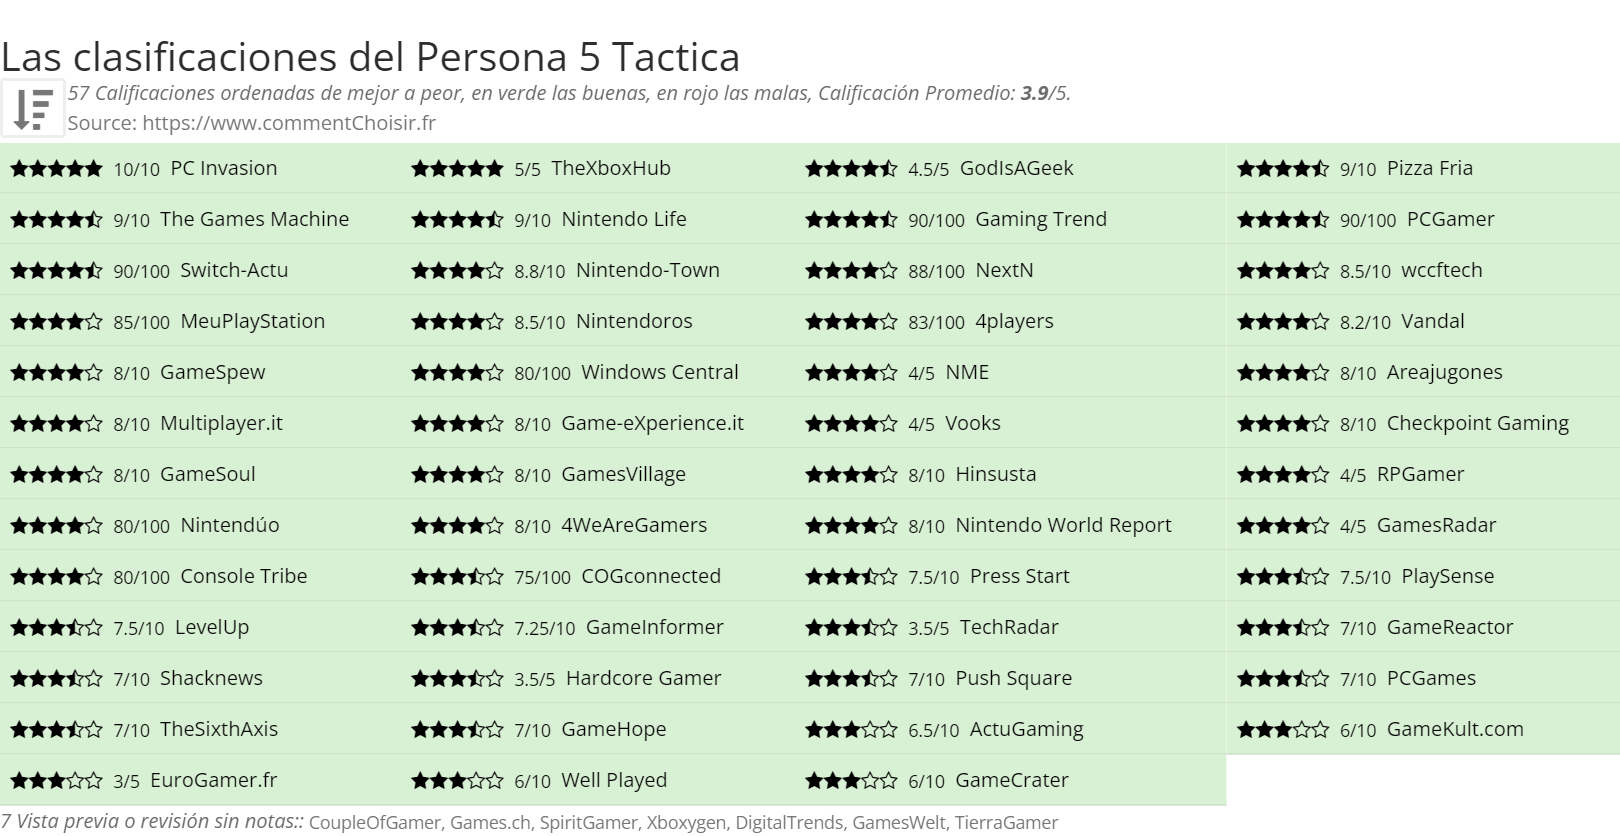 Ratings Persona 5 Tactica